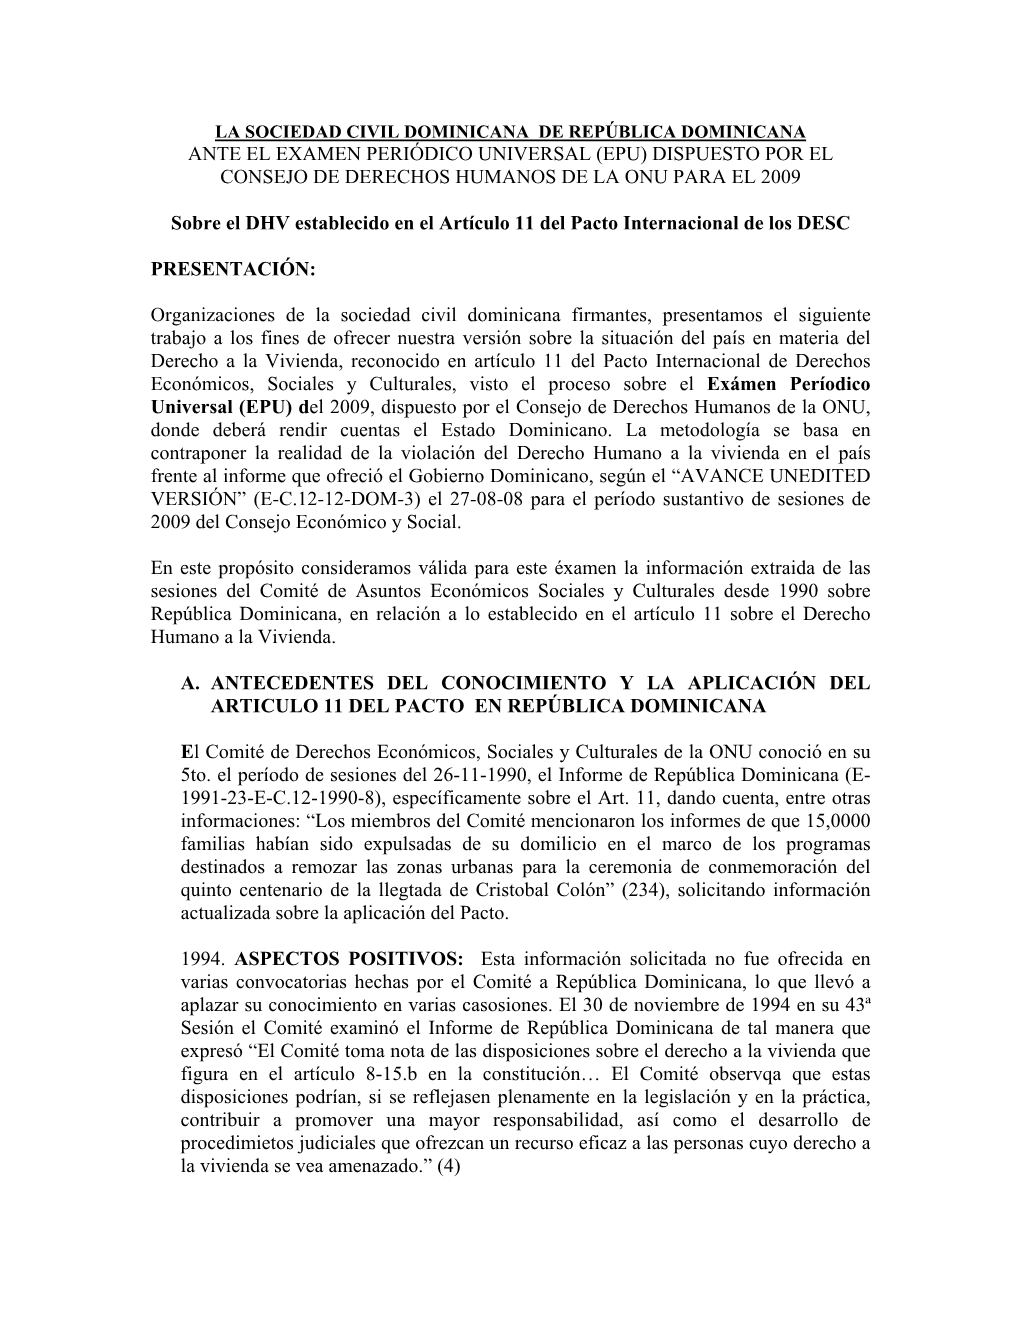 La Sociedad Civil Dominicana De República Dominicana Ante El Examen Periódico Universal (Epu) Dispuesto Por El Consejo De Derechos Humanos De La Onu Para El 2009